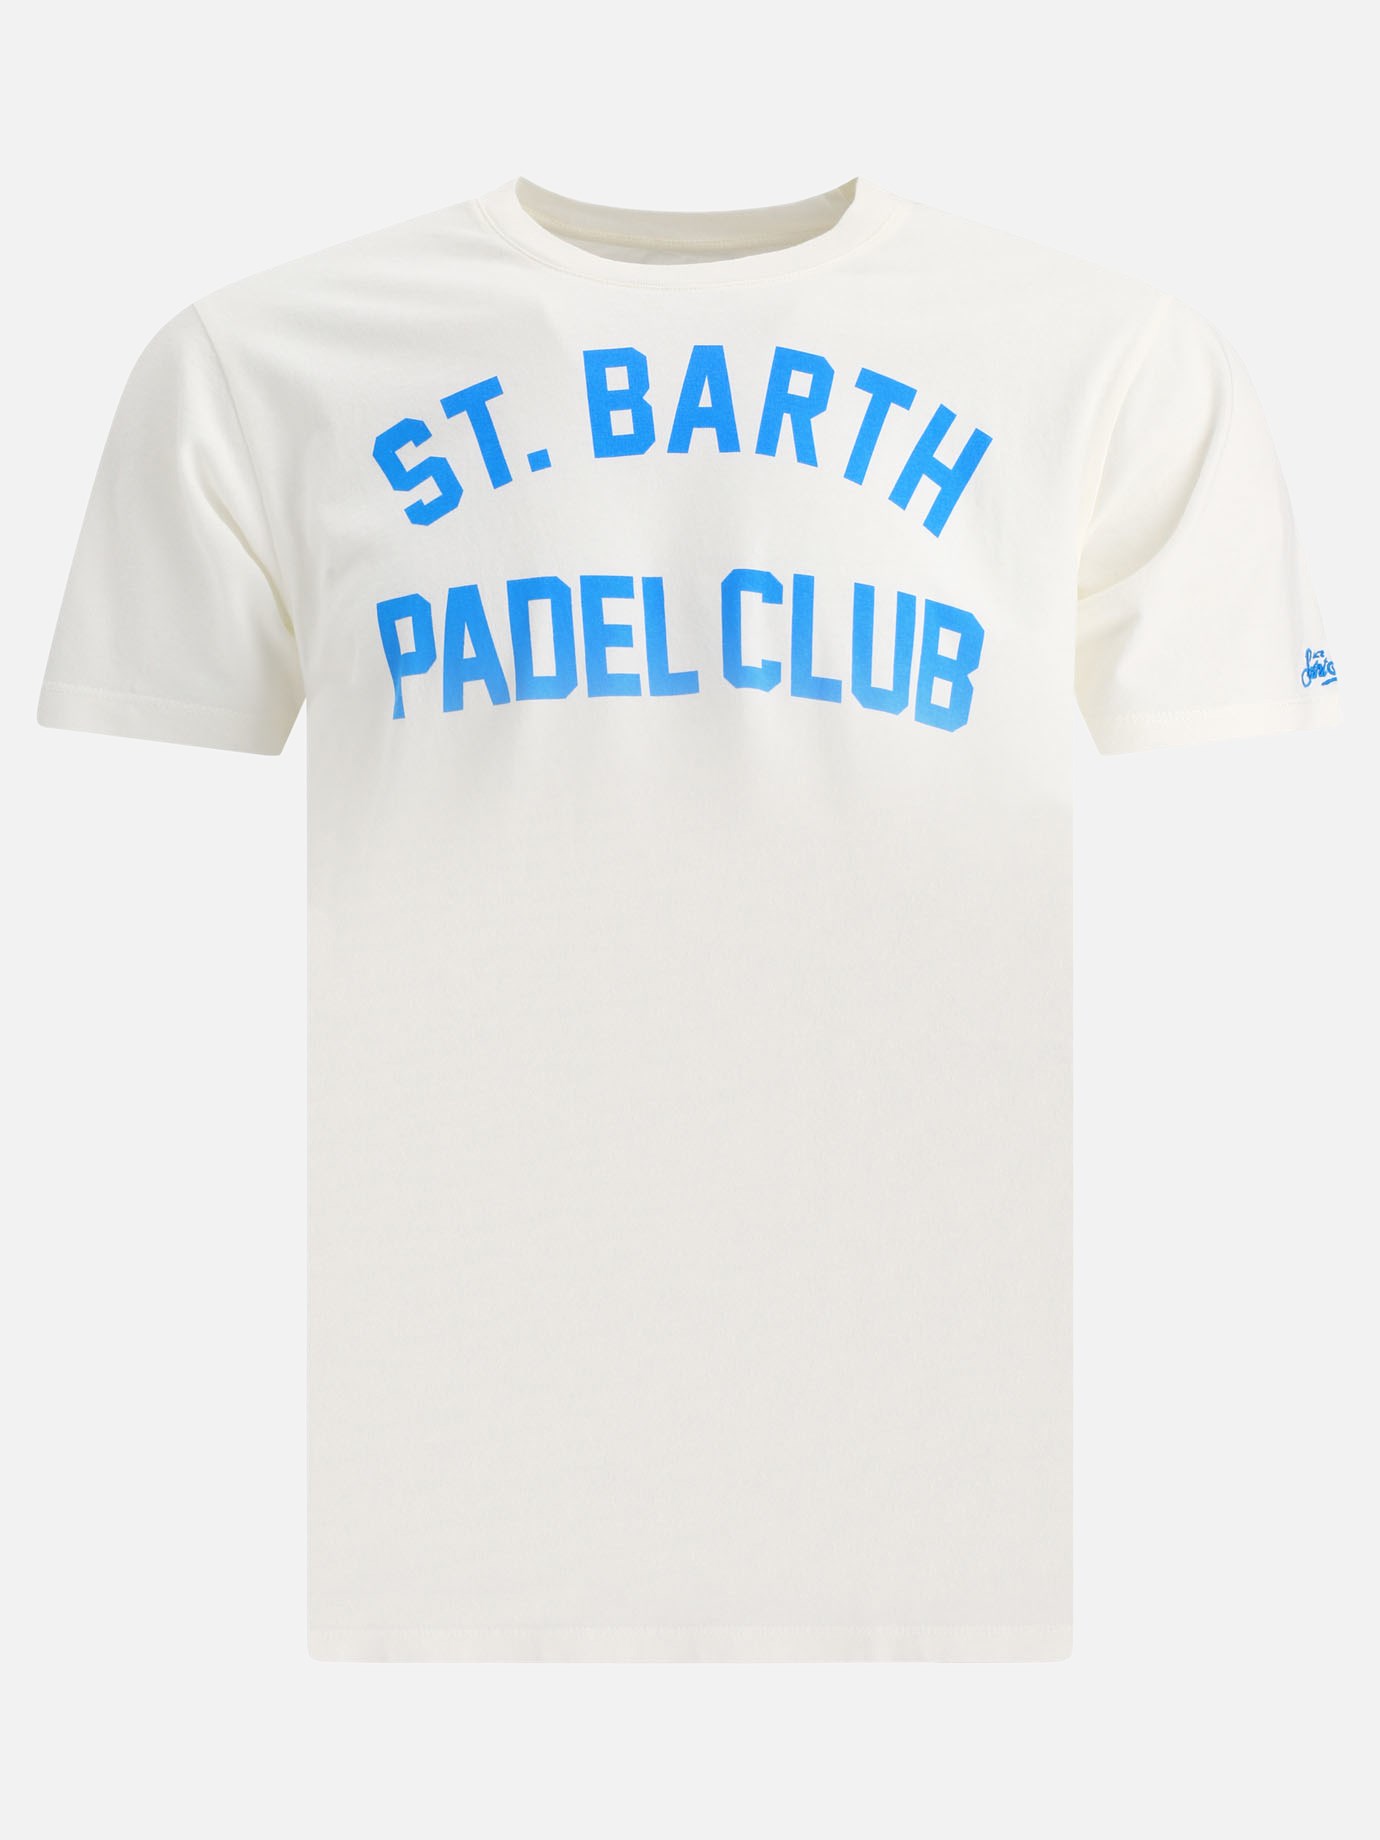  Padel Club  t-shirtby MC2 Saint Barth - 0